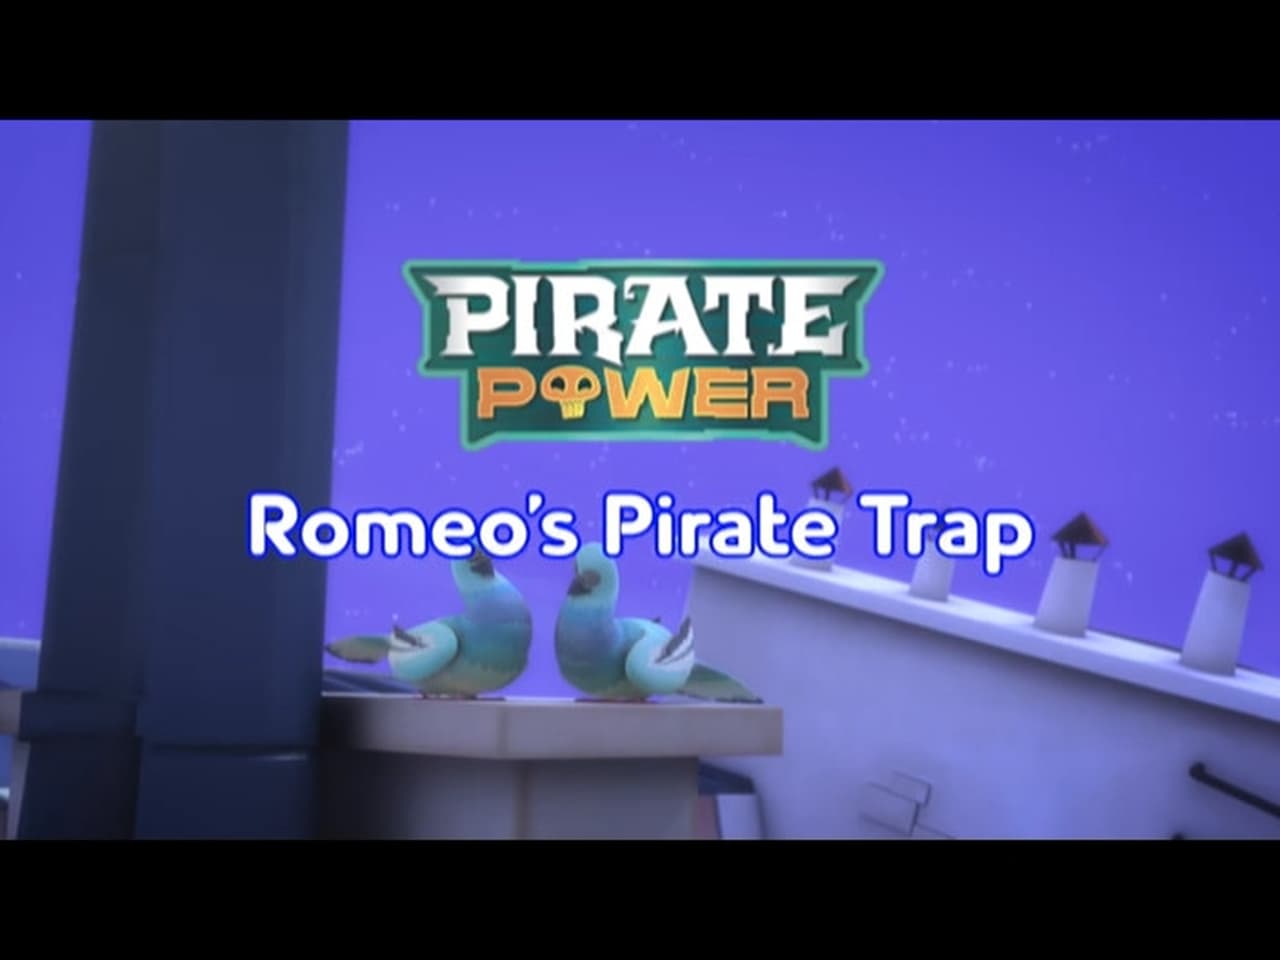 Romeos Pirate Trap